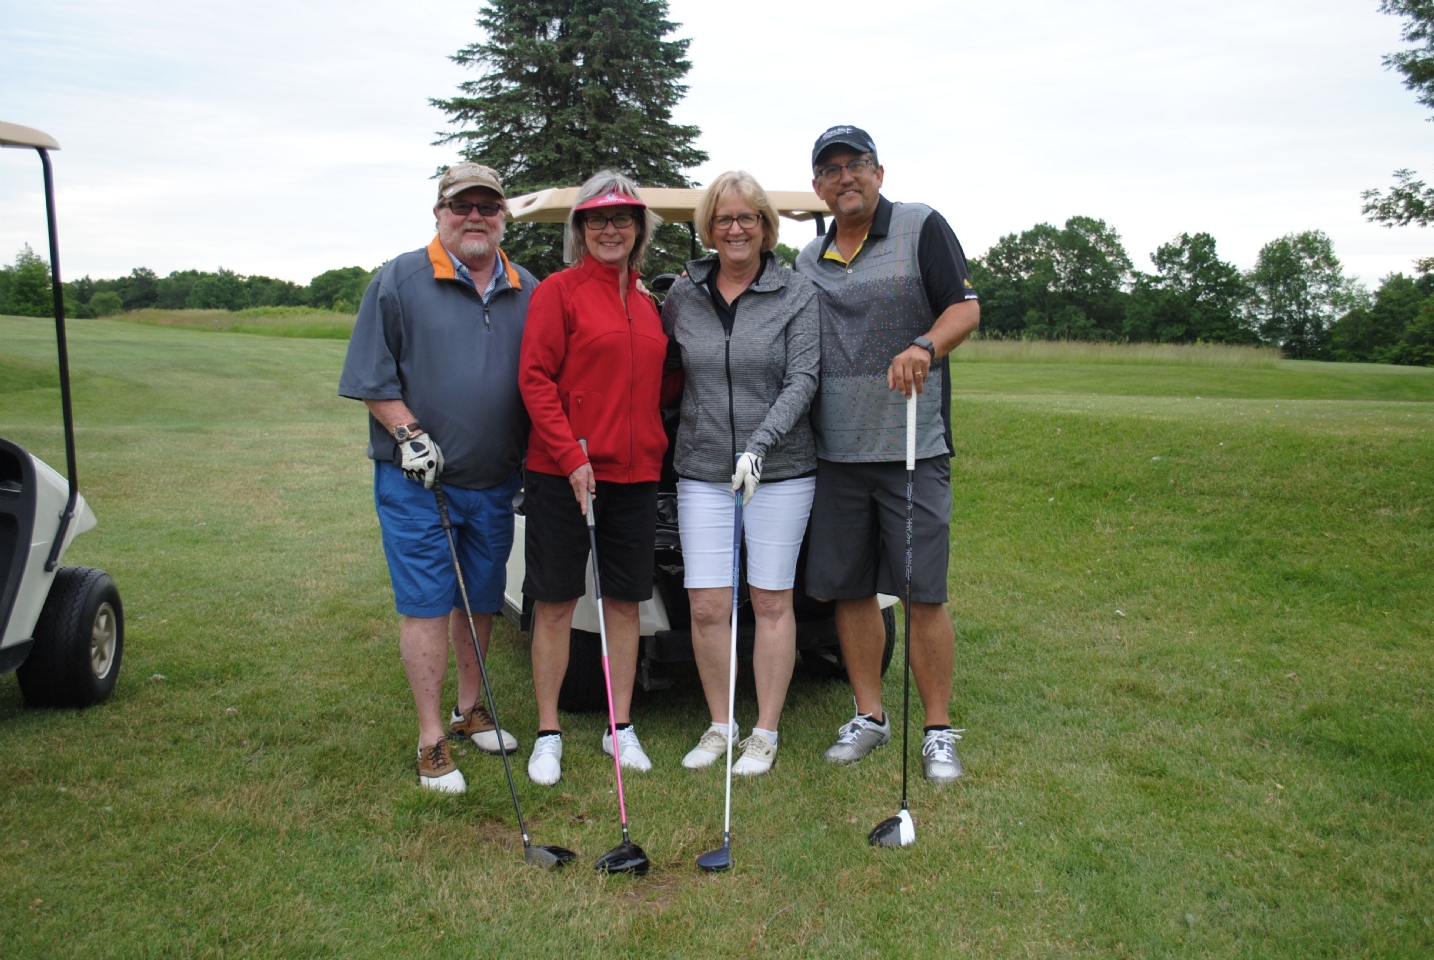 Village Green Golf Course, Newaygo, MI

Dan Nelson
Alan Brander
Kathie Olds
Judy Nelson
